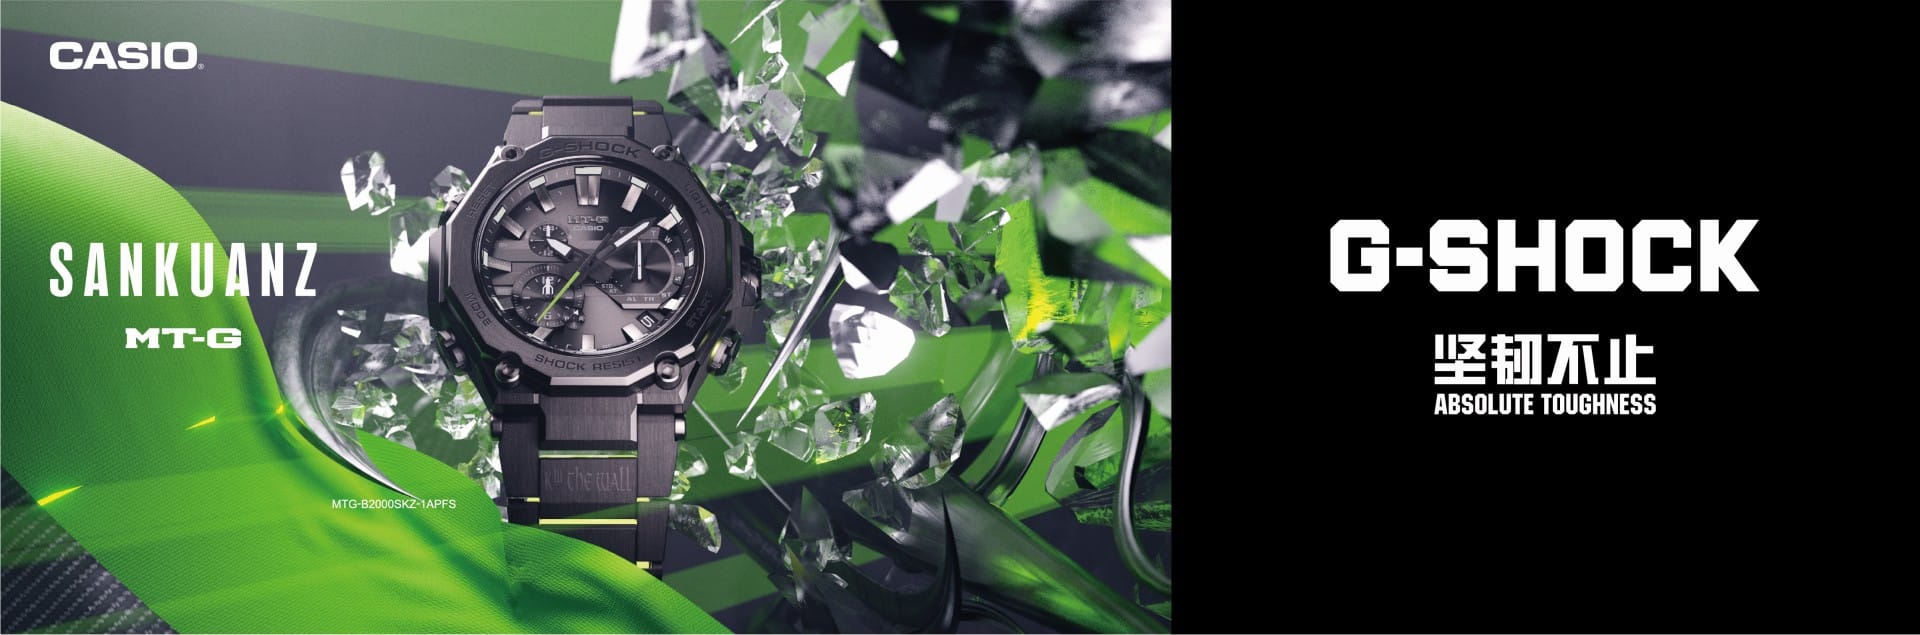 Casio G-Shock MT-G x SANKUANZ